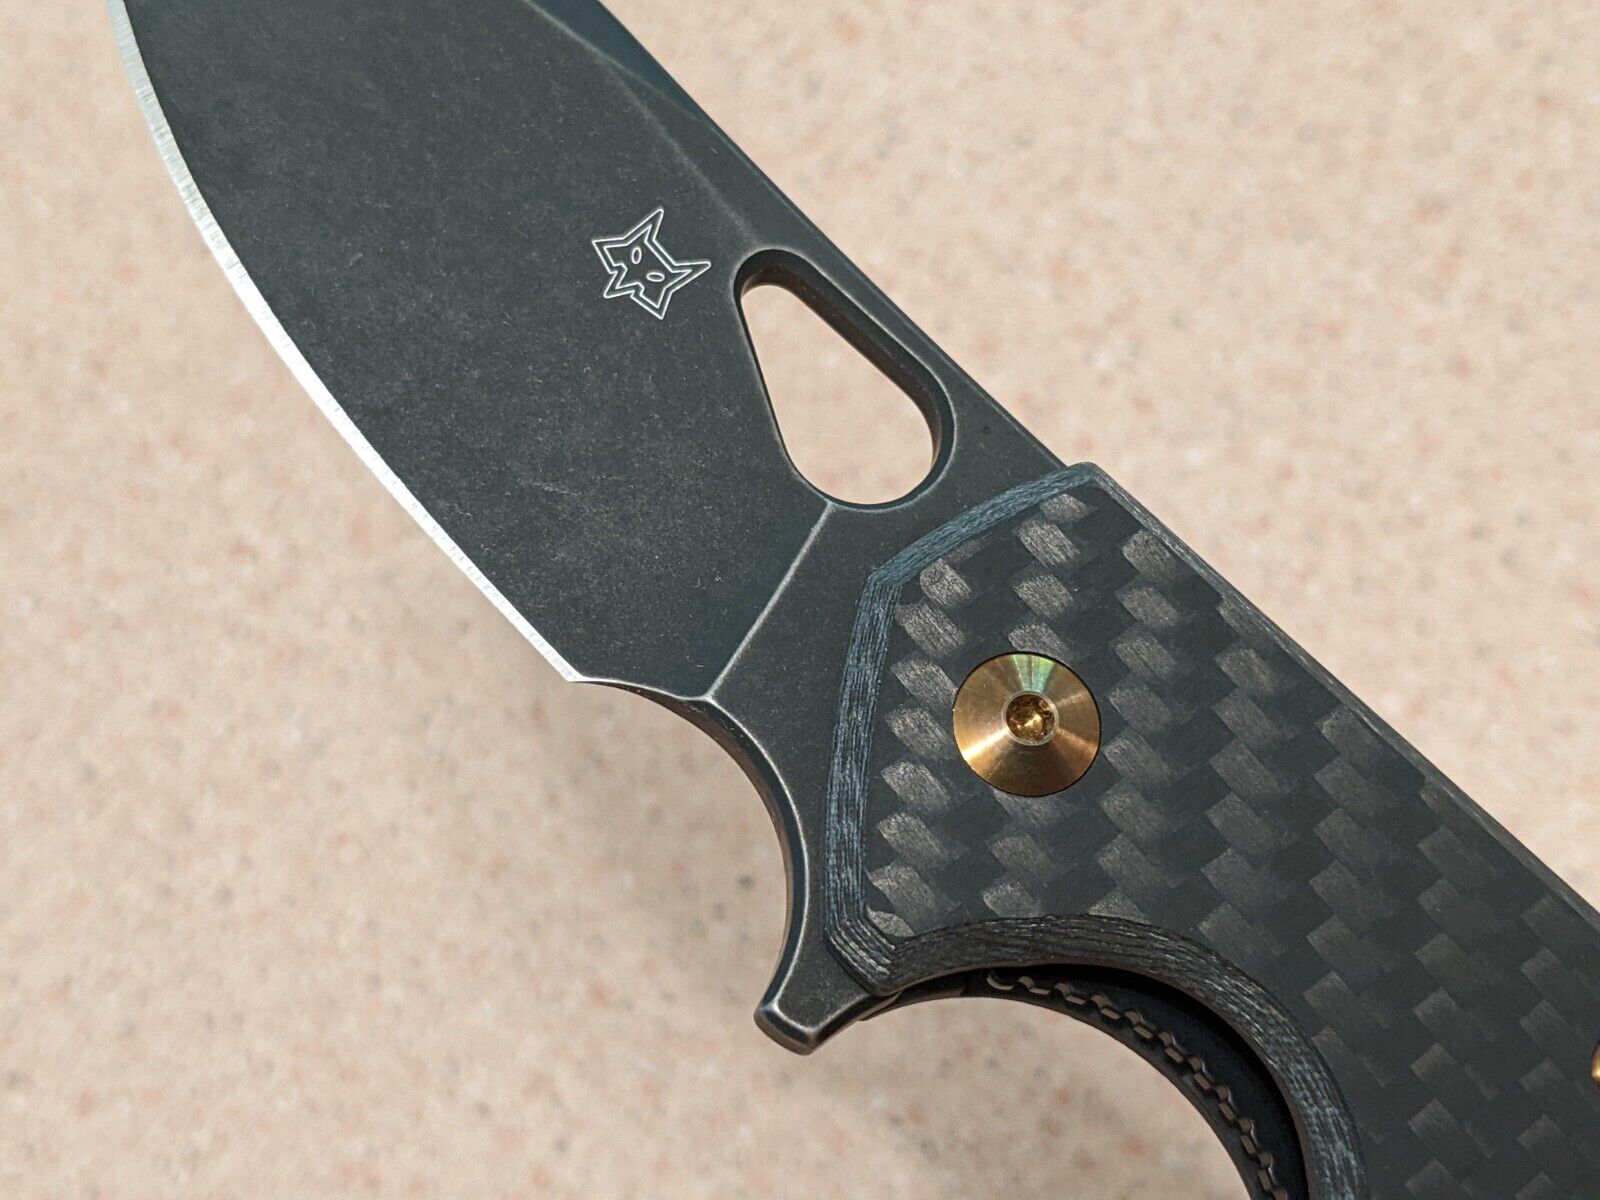 Fox Knives  Jesper Voxnaes - Carbon Fiber Vox Yaru Knife - Bohler M390 stainless